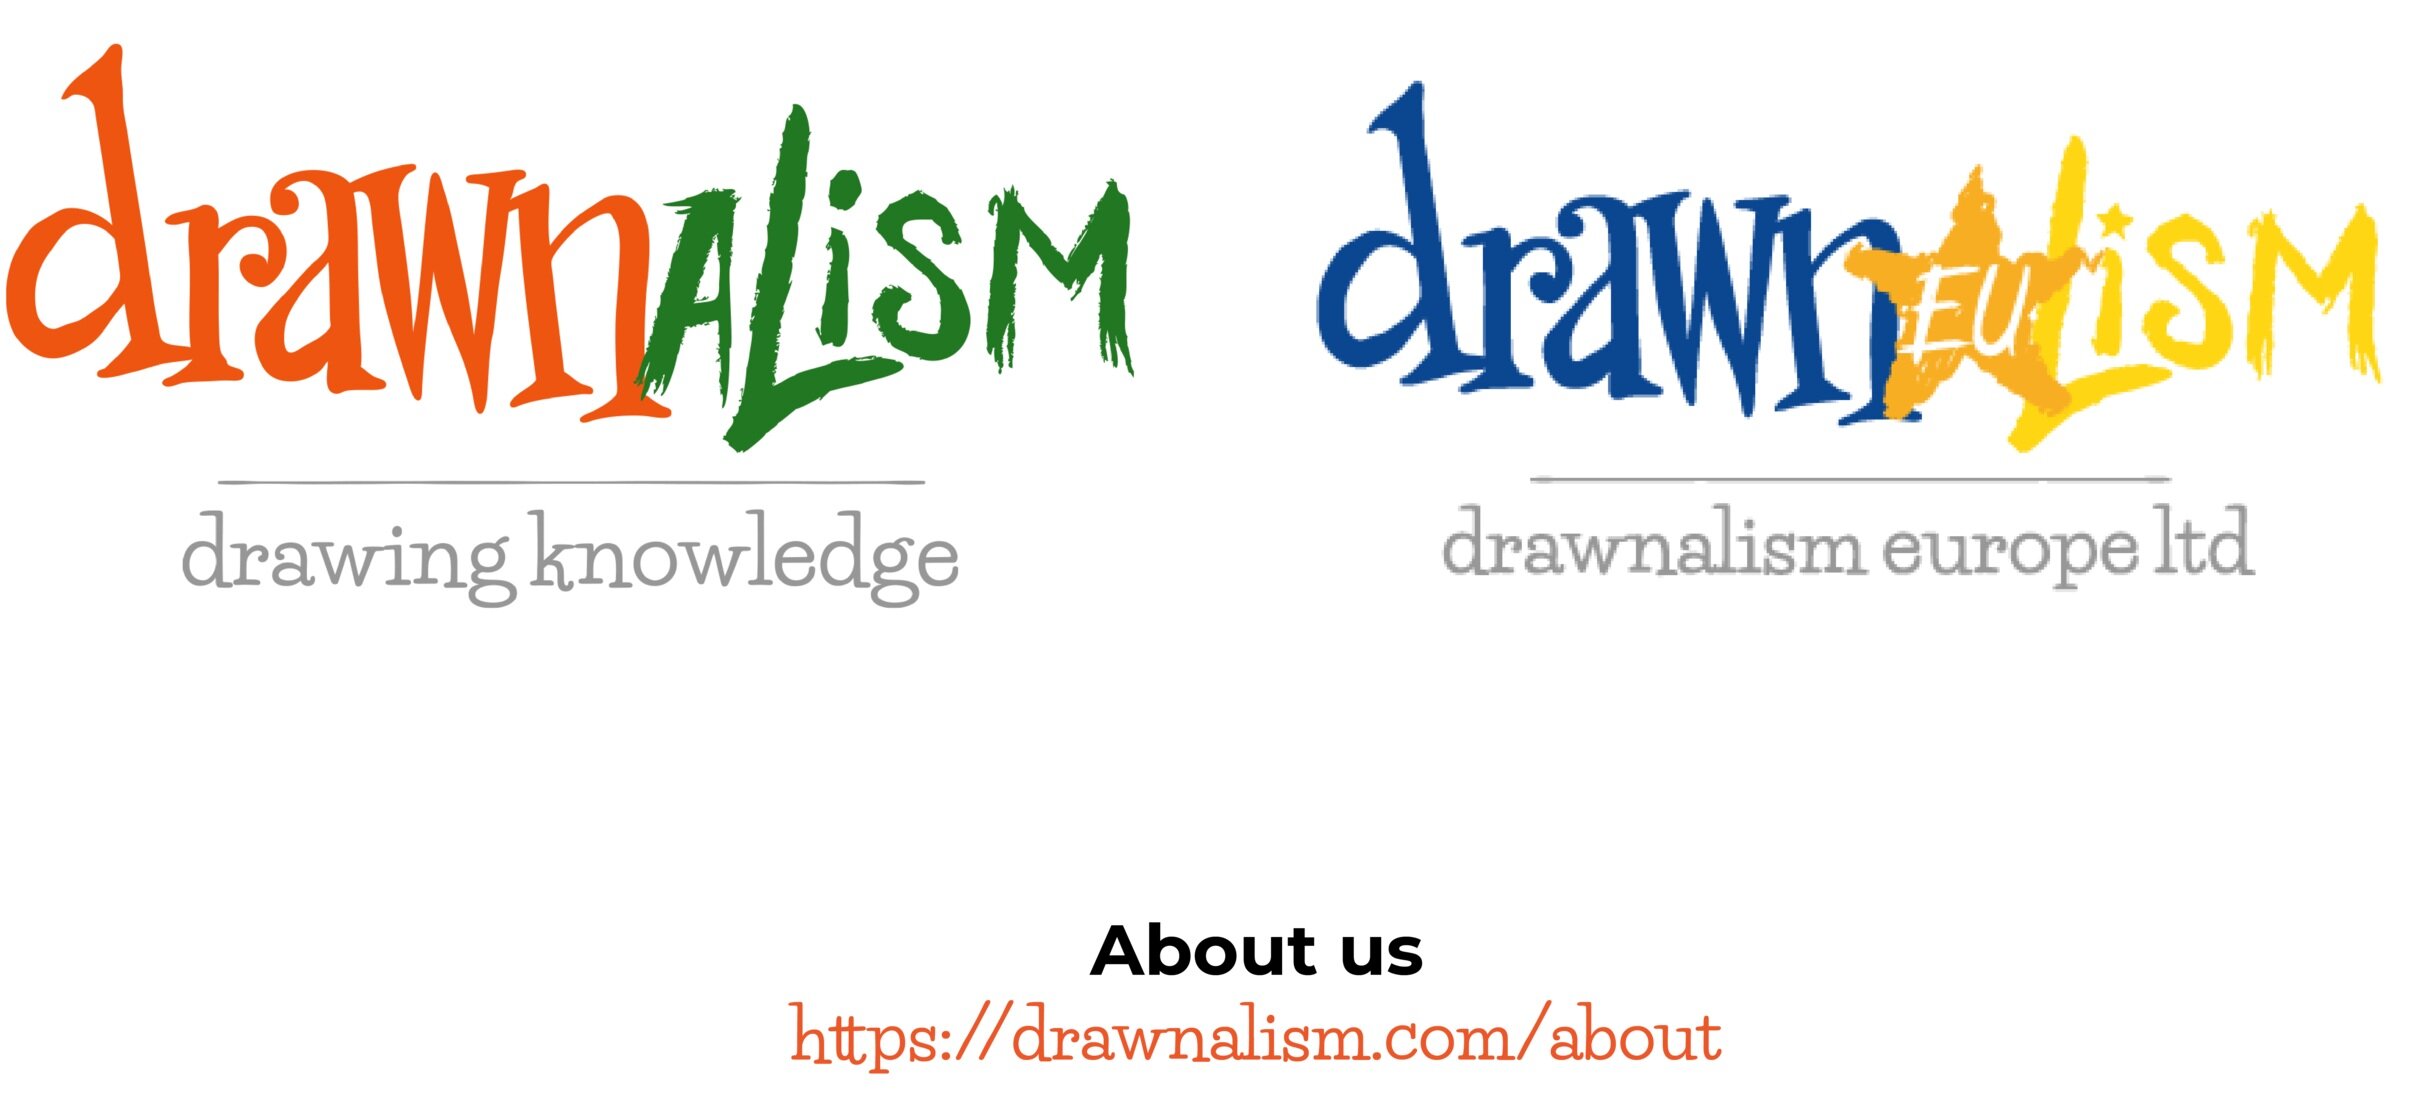 Drawnalism and Drawnalism Europe Ltd